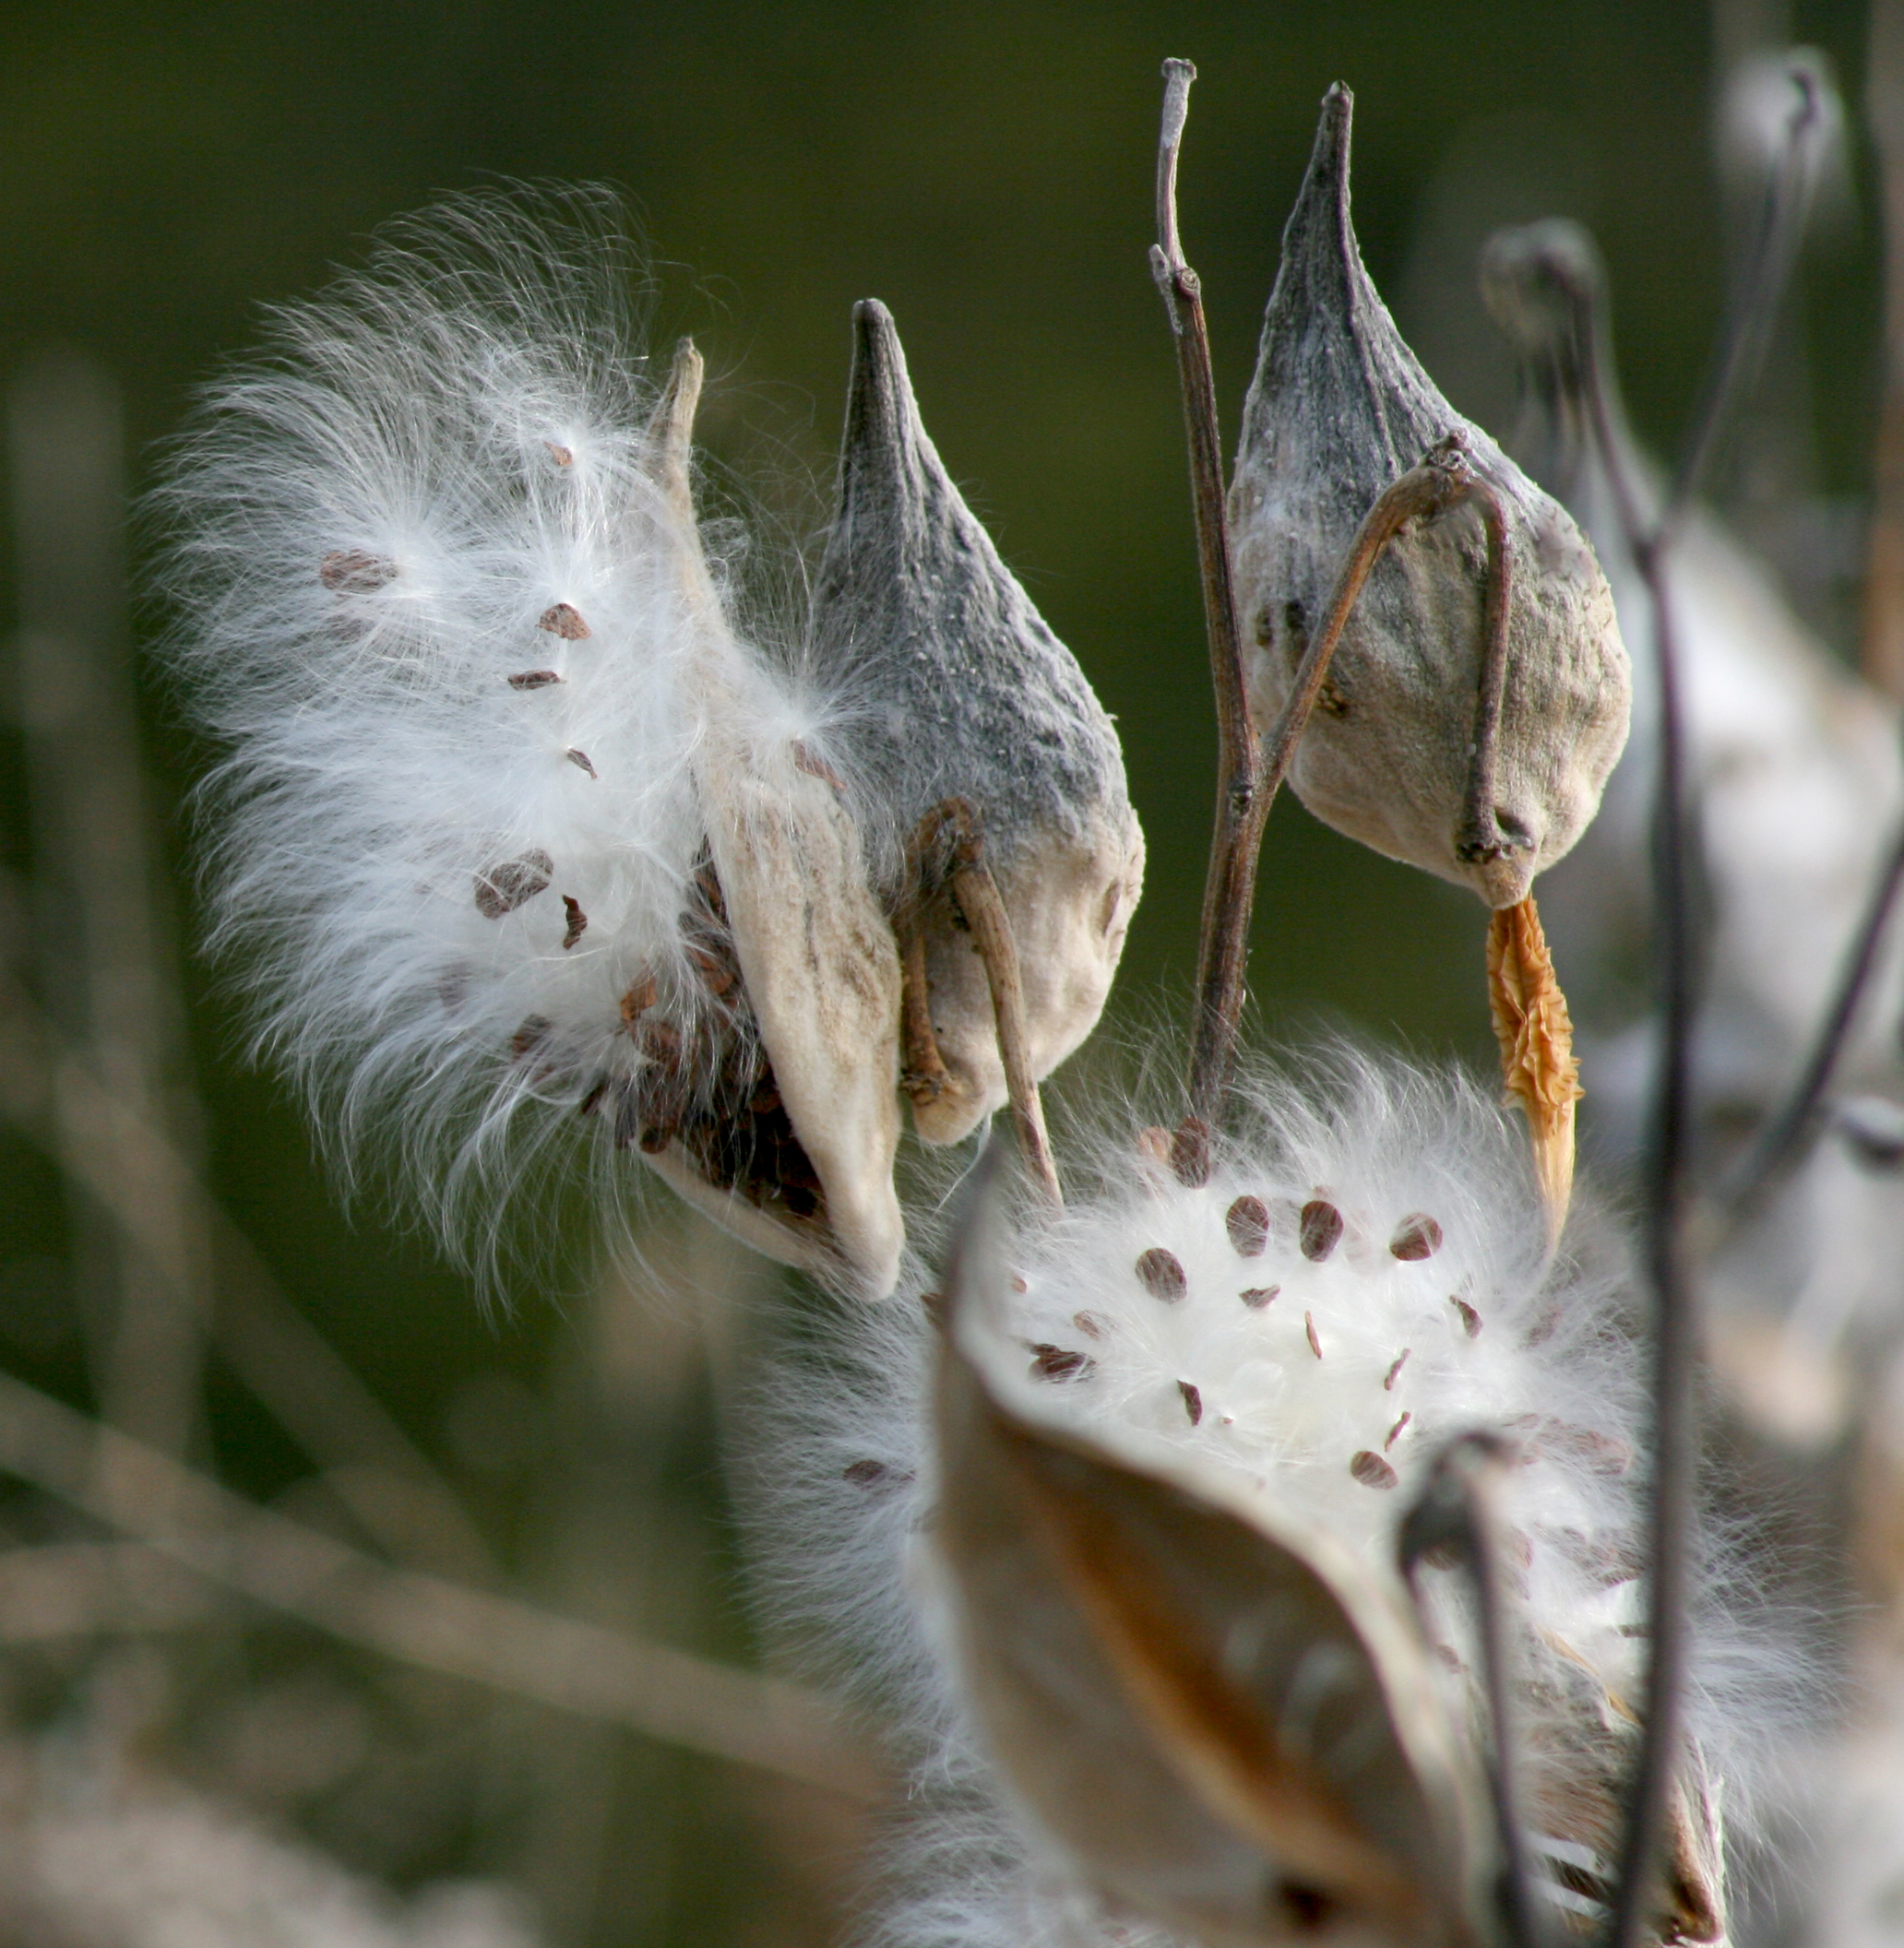 common milkweed pods